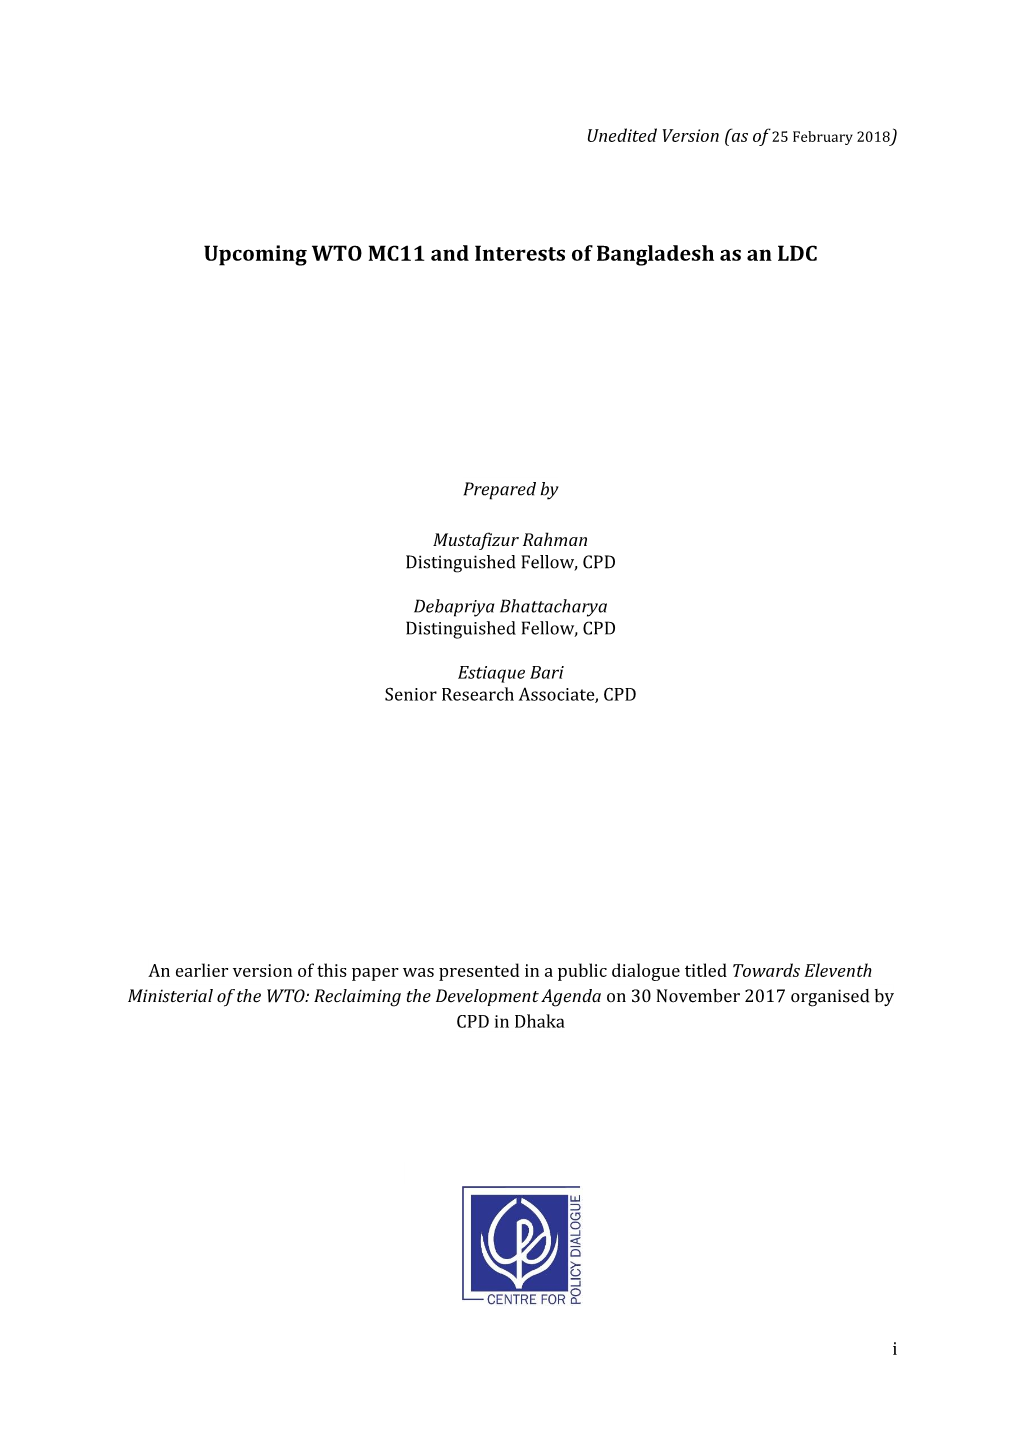 Upcoming WTO MC11 and Interests of Bangladesh As an LDC